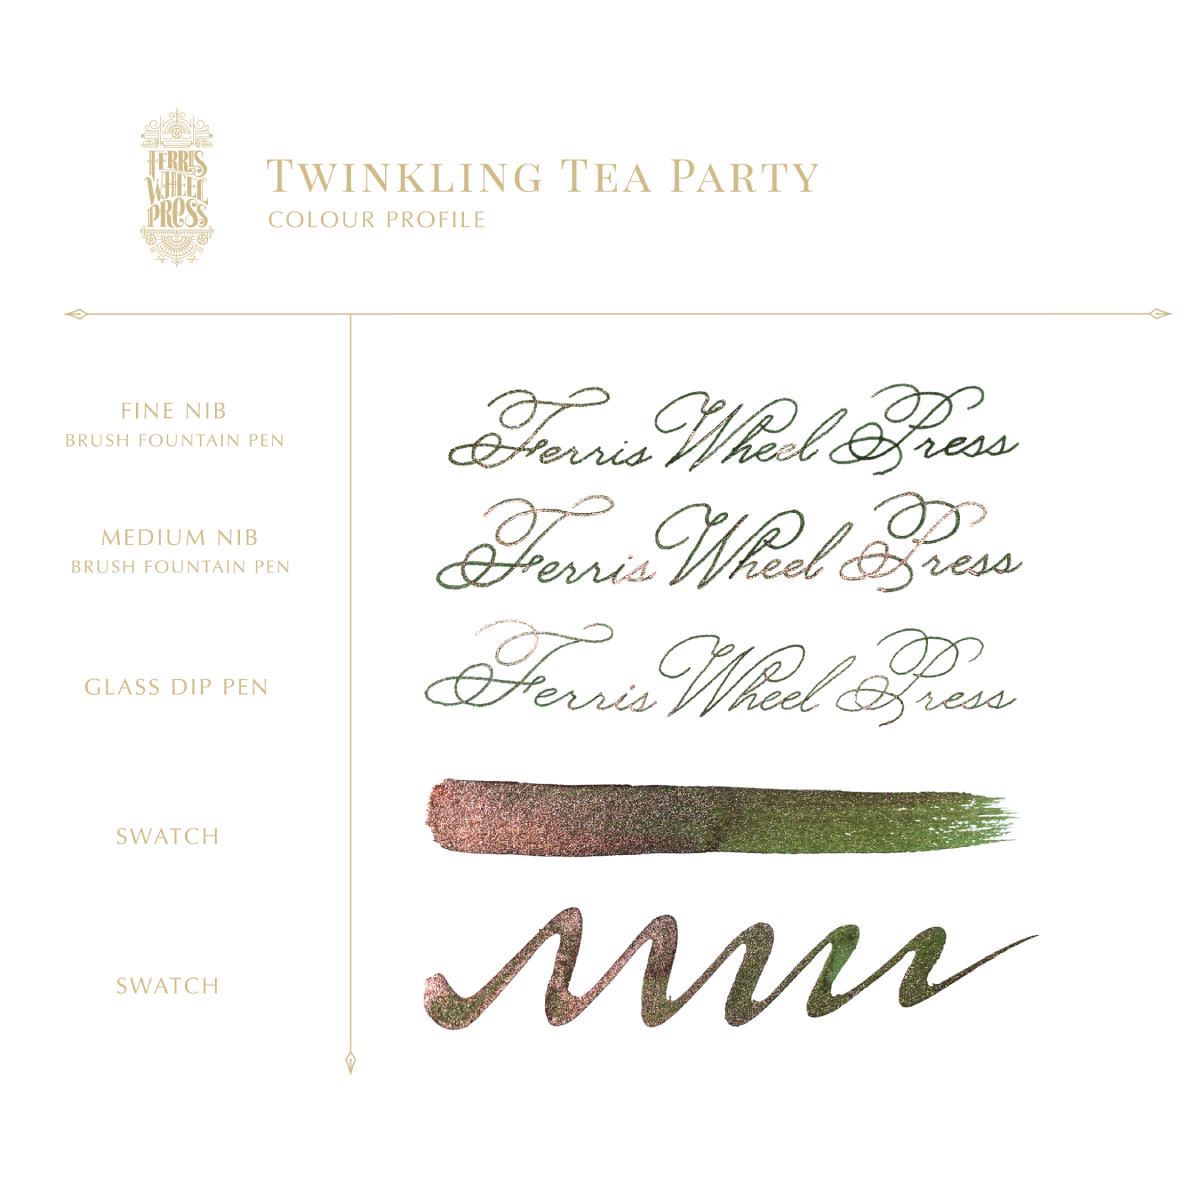 Ferris Wheel Press - Ferritales Ink - Twinkling Tea Party, 20 ml